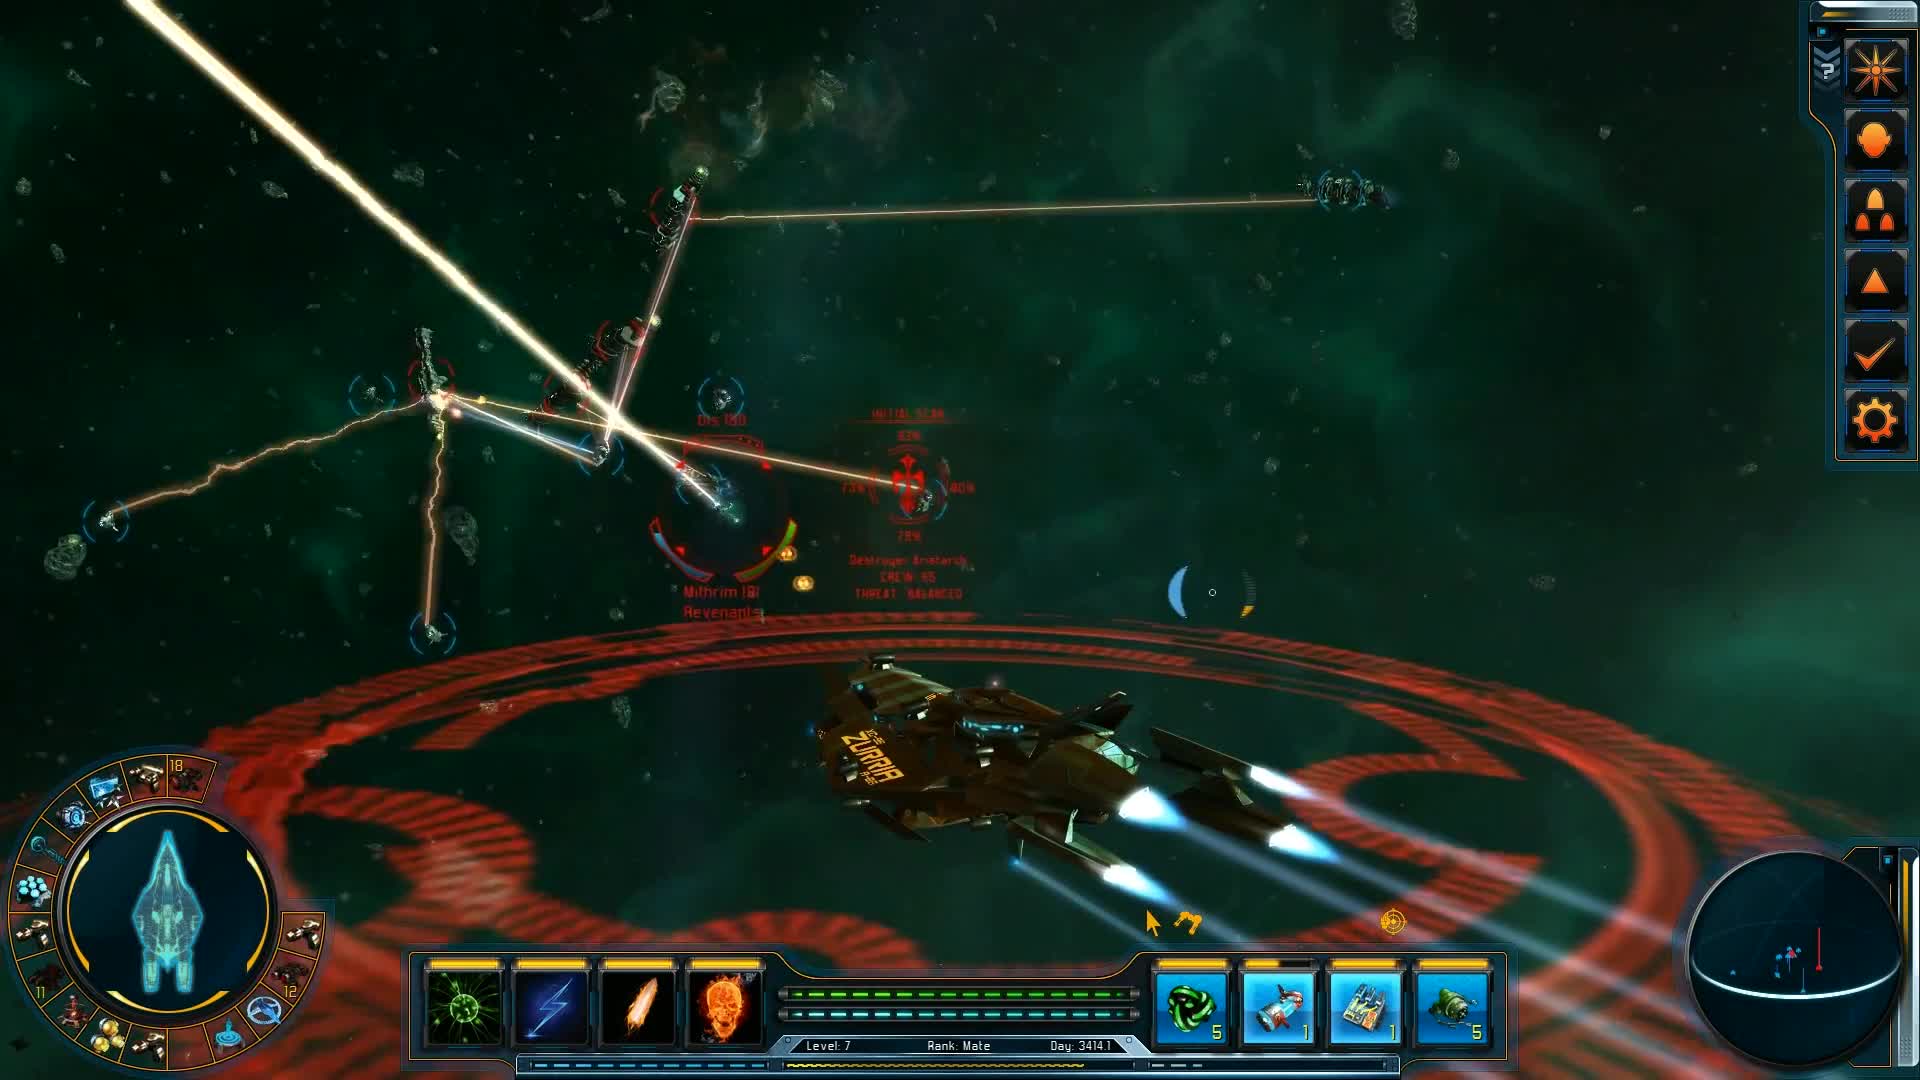 Starpoint Gemini 2 - Gameplay trailer